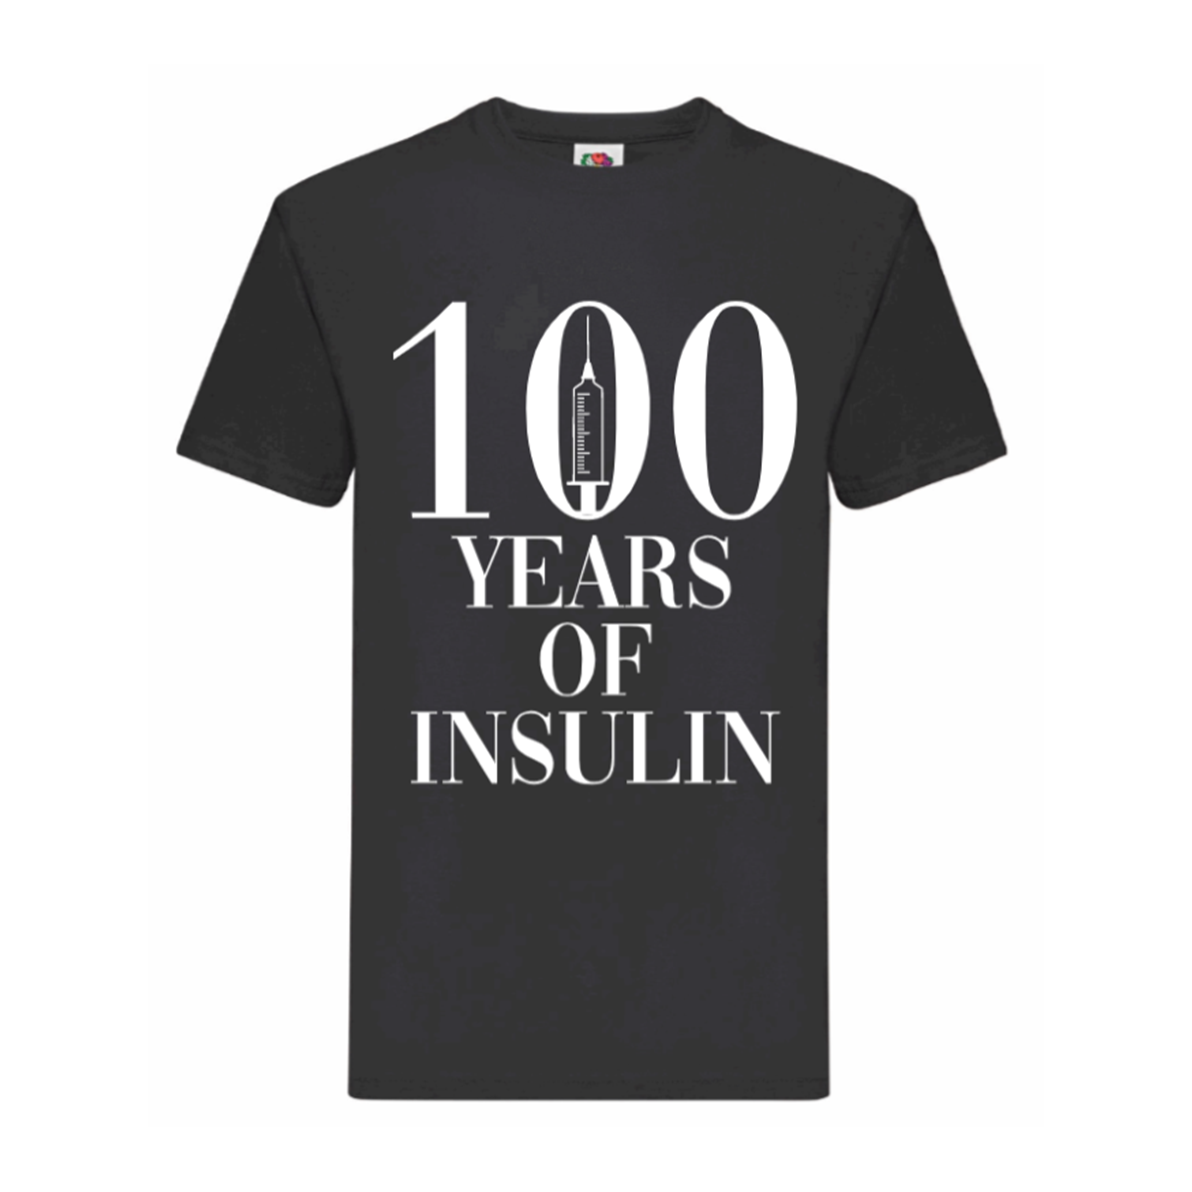 100 Years Of Insulin Kids T Shirt